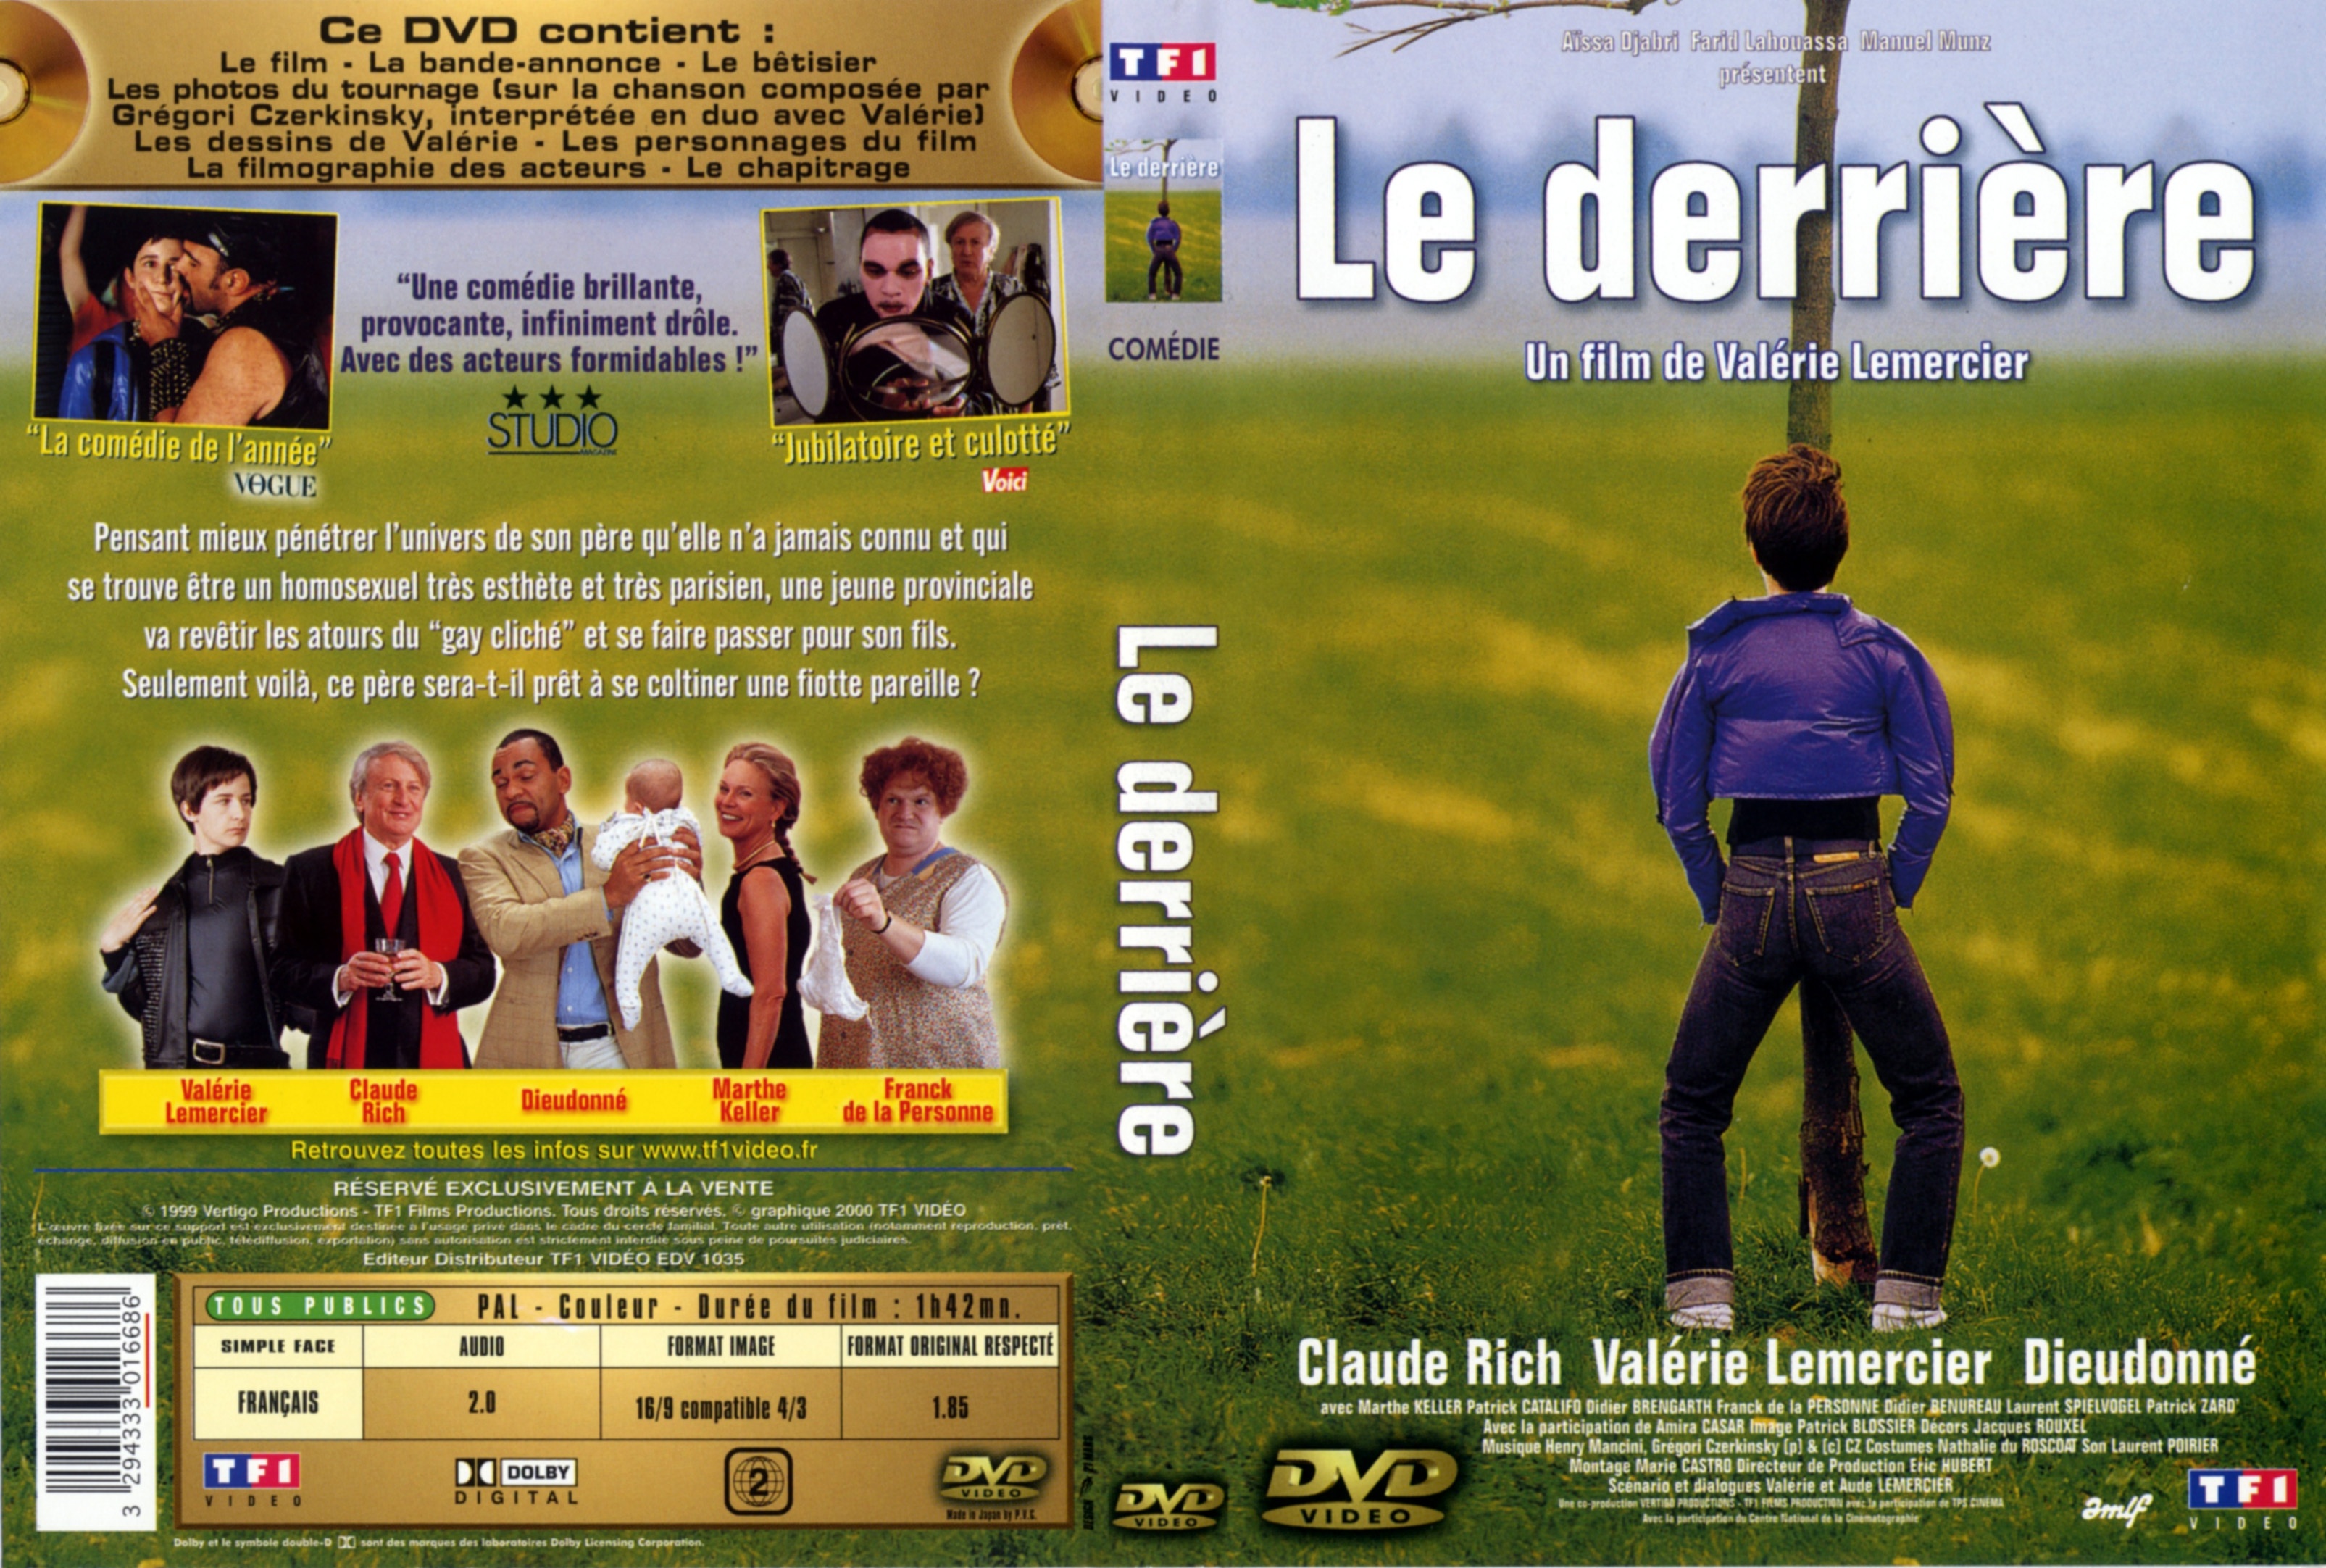 Jaquette DVD Le derrire v2